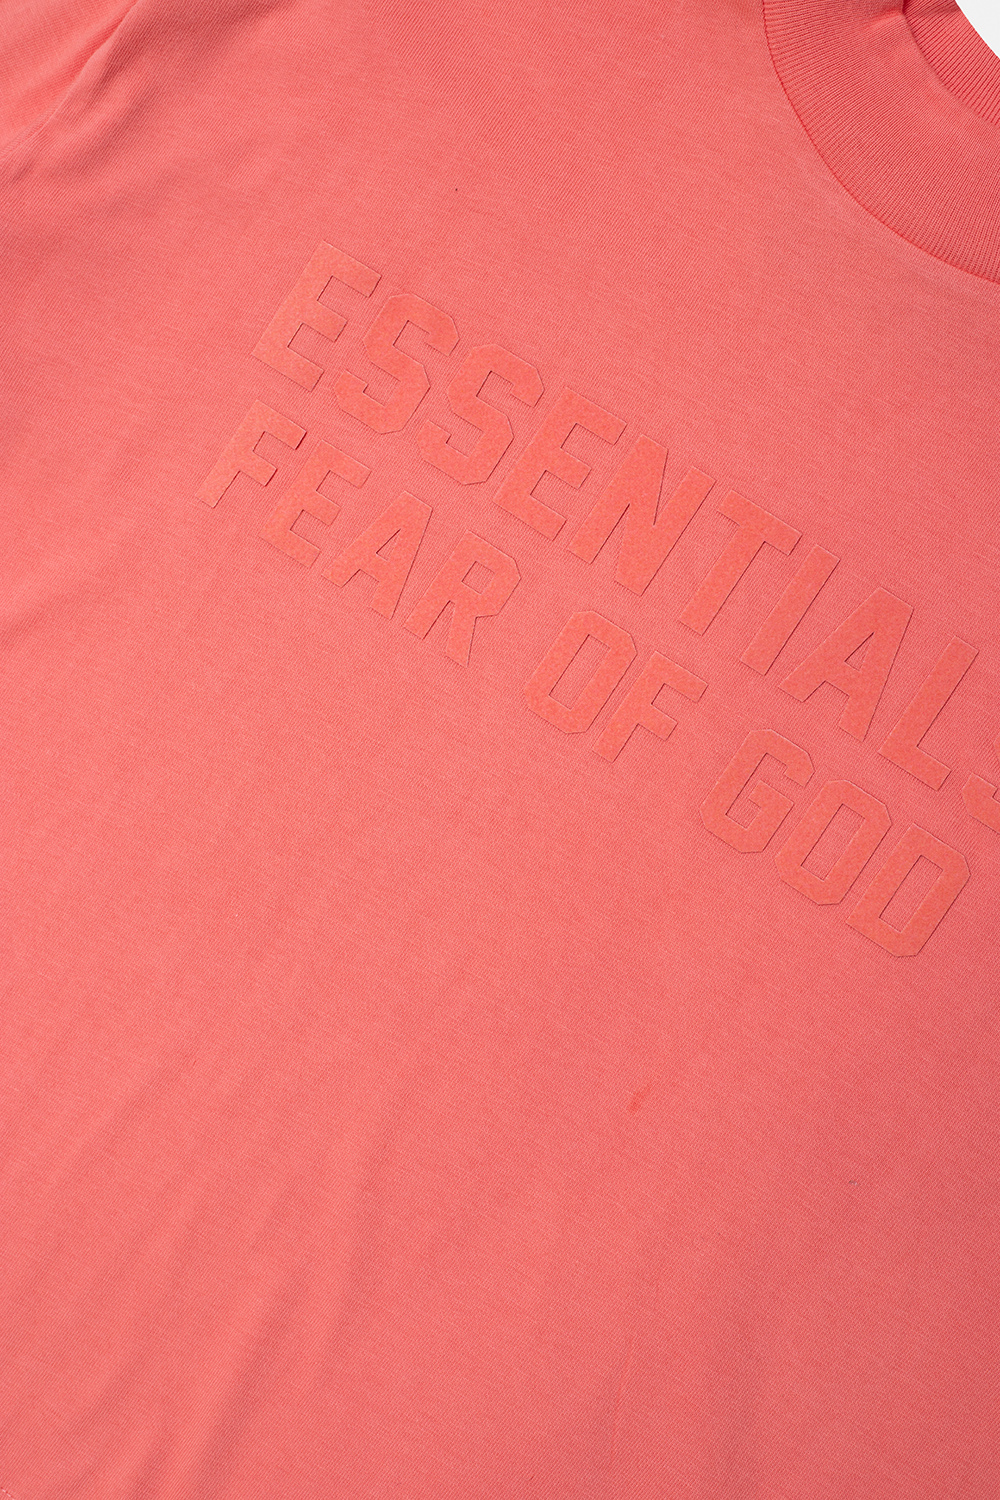 Fear Of God Essentials Kids Long-sleeved T-shirt